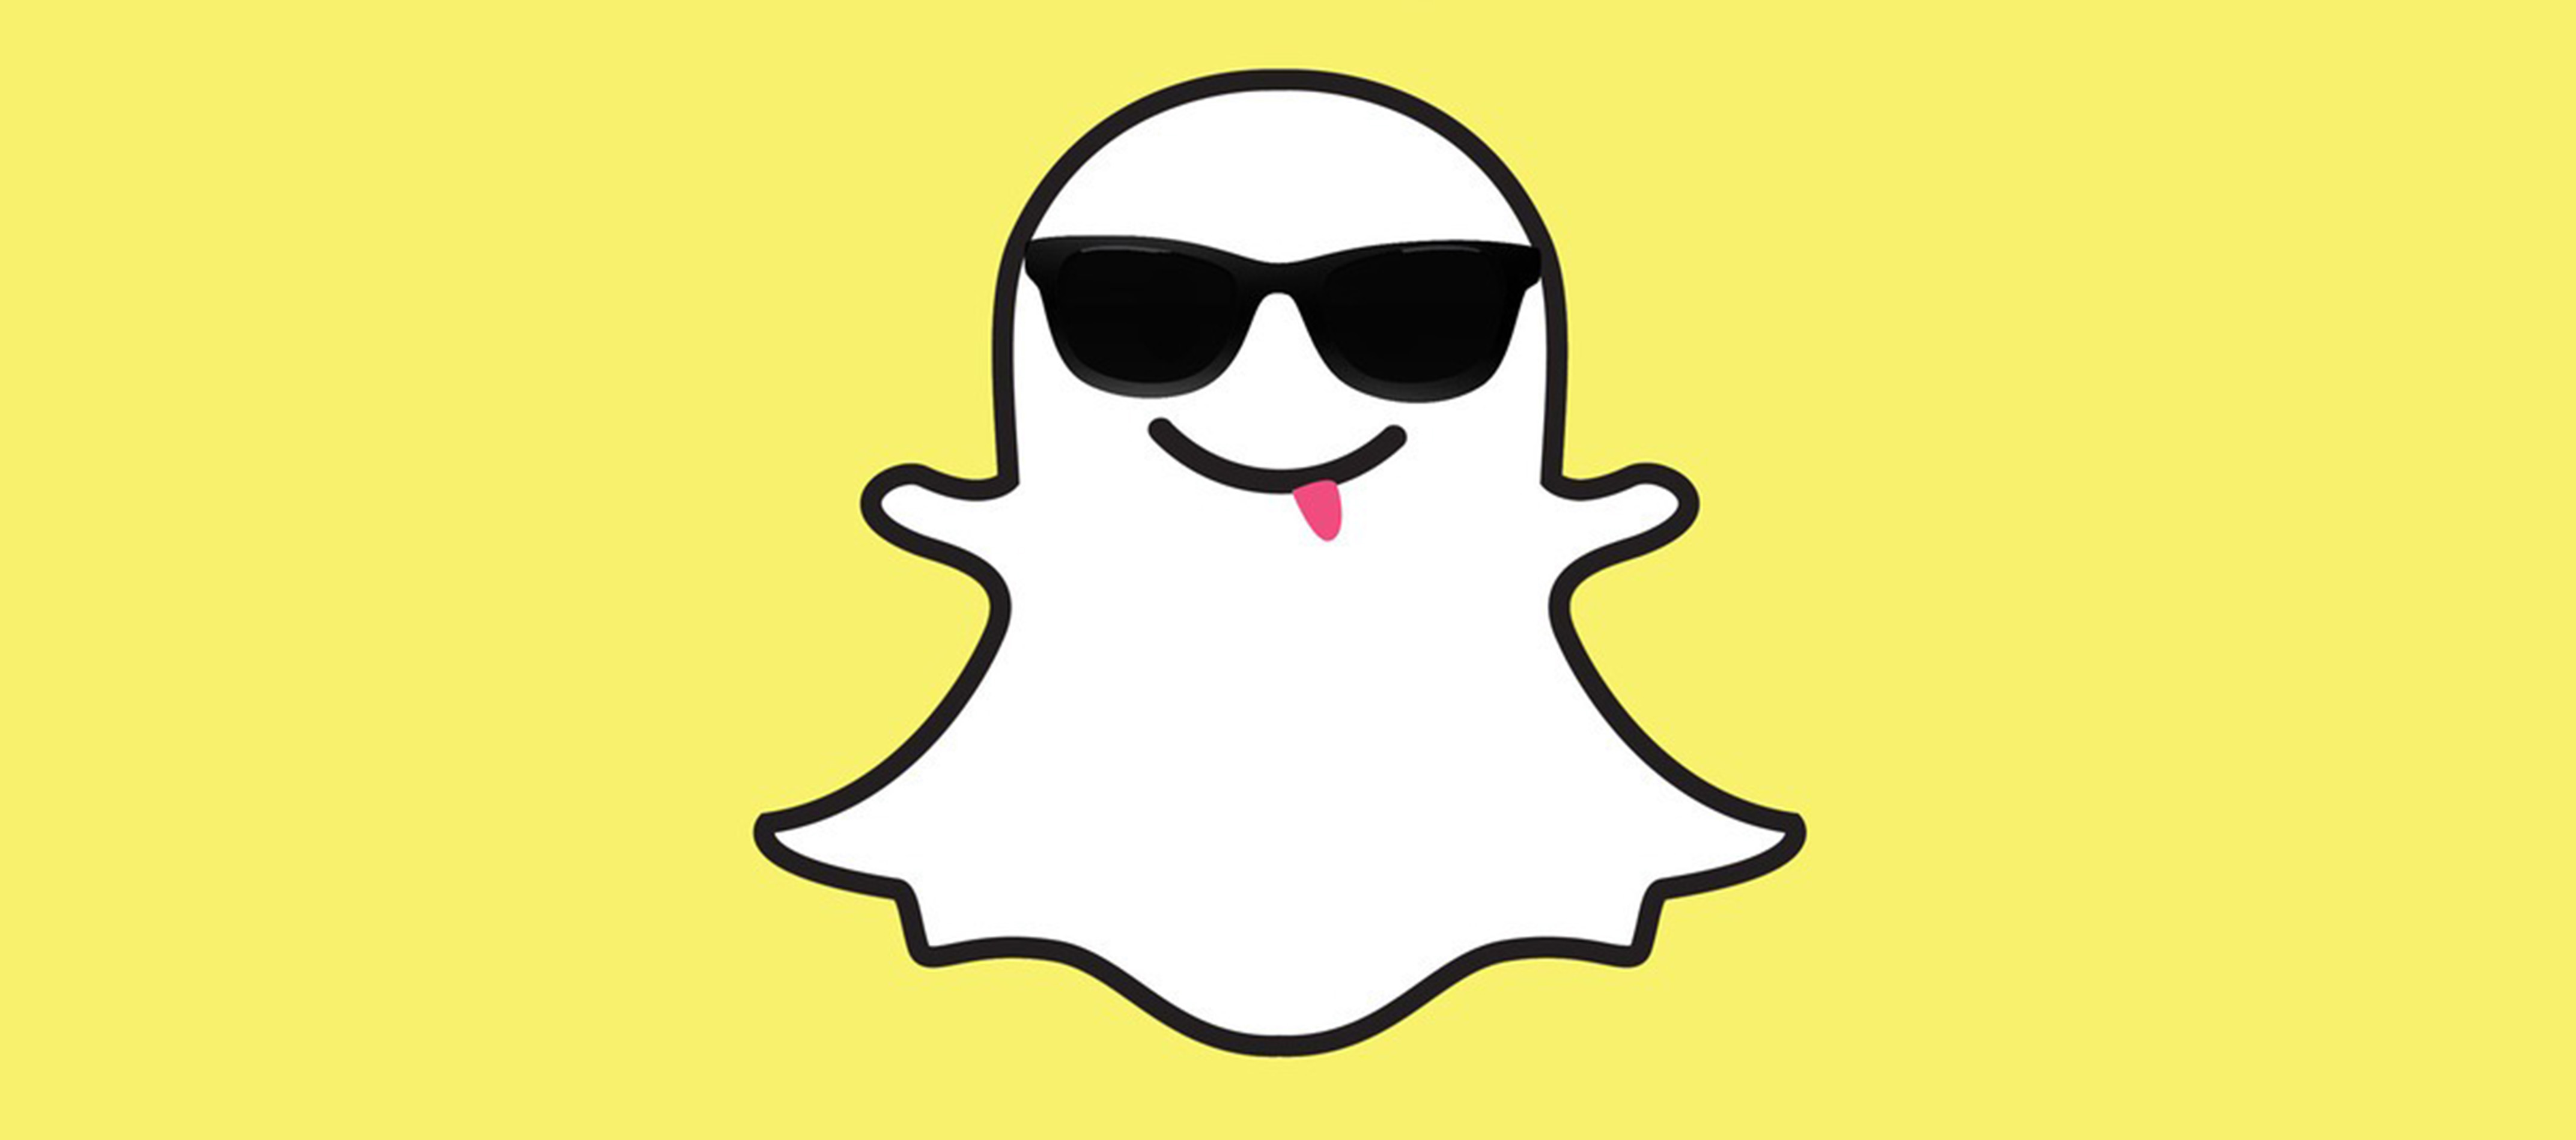 سناب المالكة لـ Snapchat تخطط لإصدار سندات دين بقيمة مليار دولار